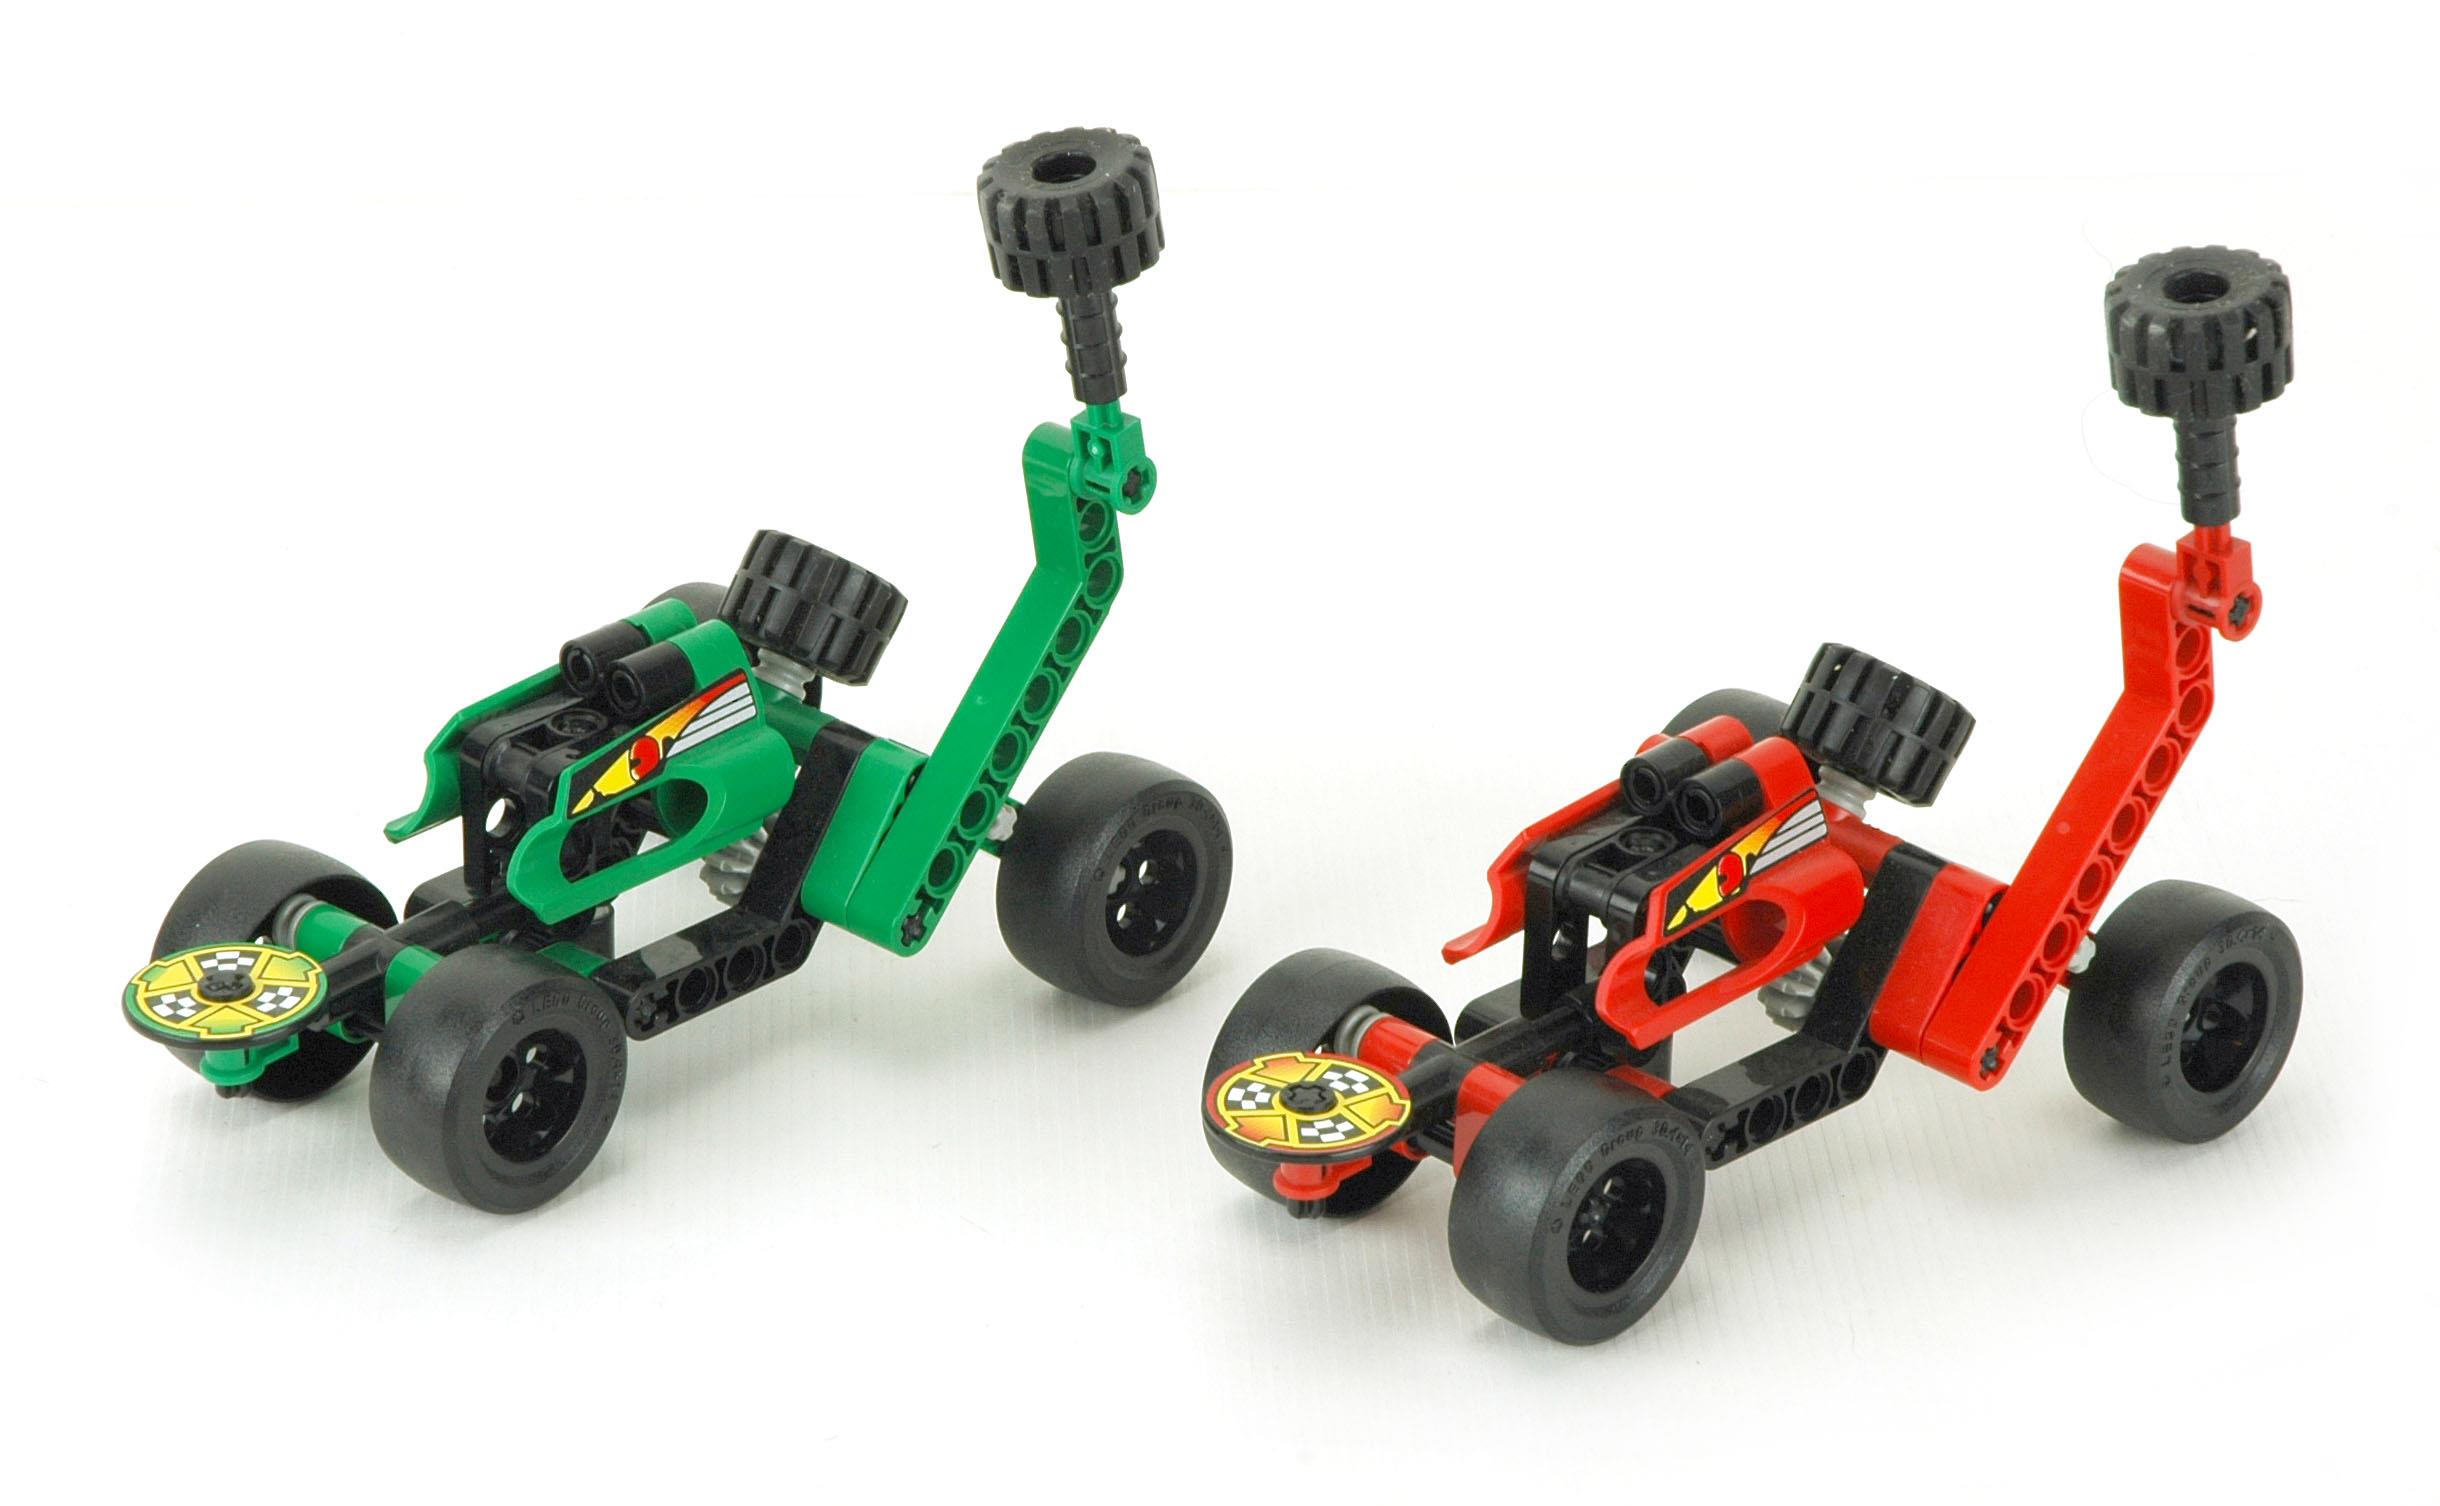 Unopened 2001 Technic Battle Cars Lego Set #8241